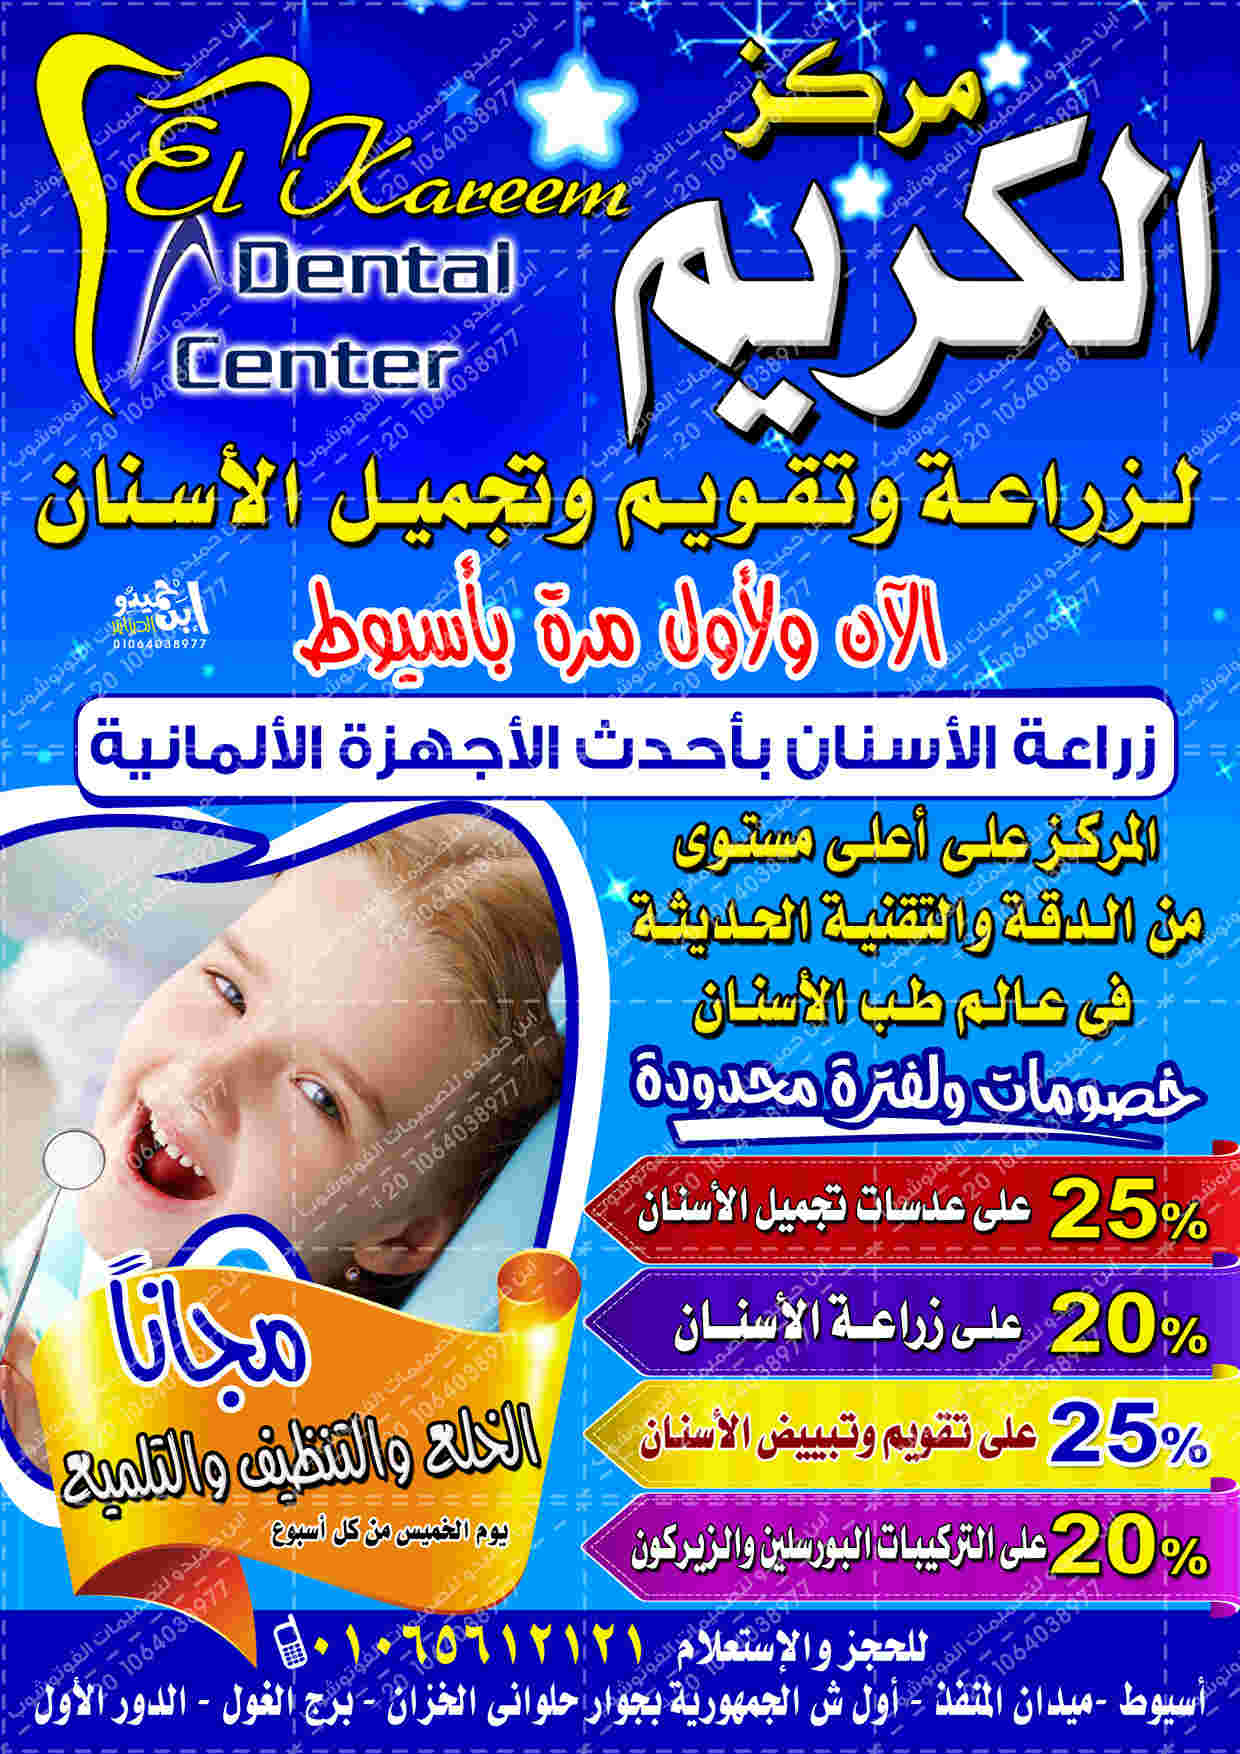 بروشور اعلان مركز الكريم لطب الاسنان - ابن حميدو لتصميمات الفوتوشوب Oi-a410